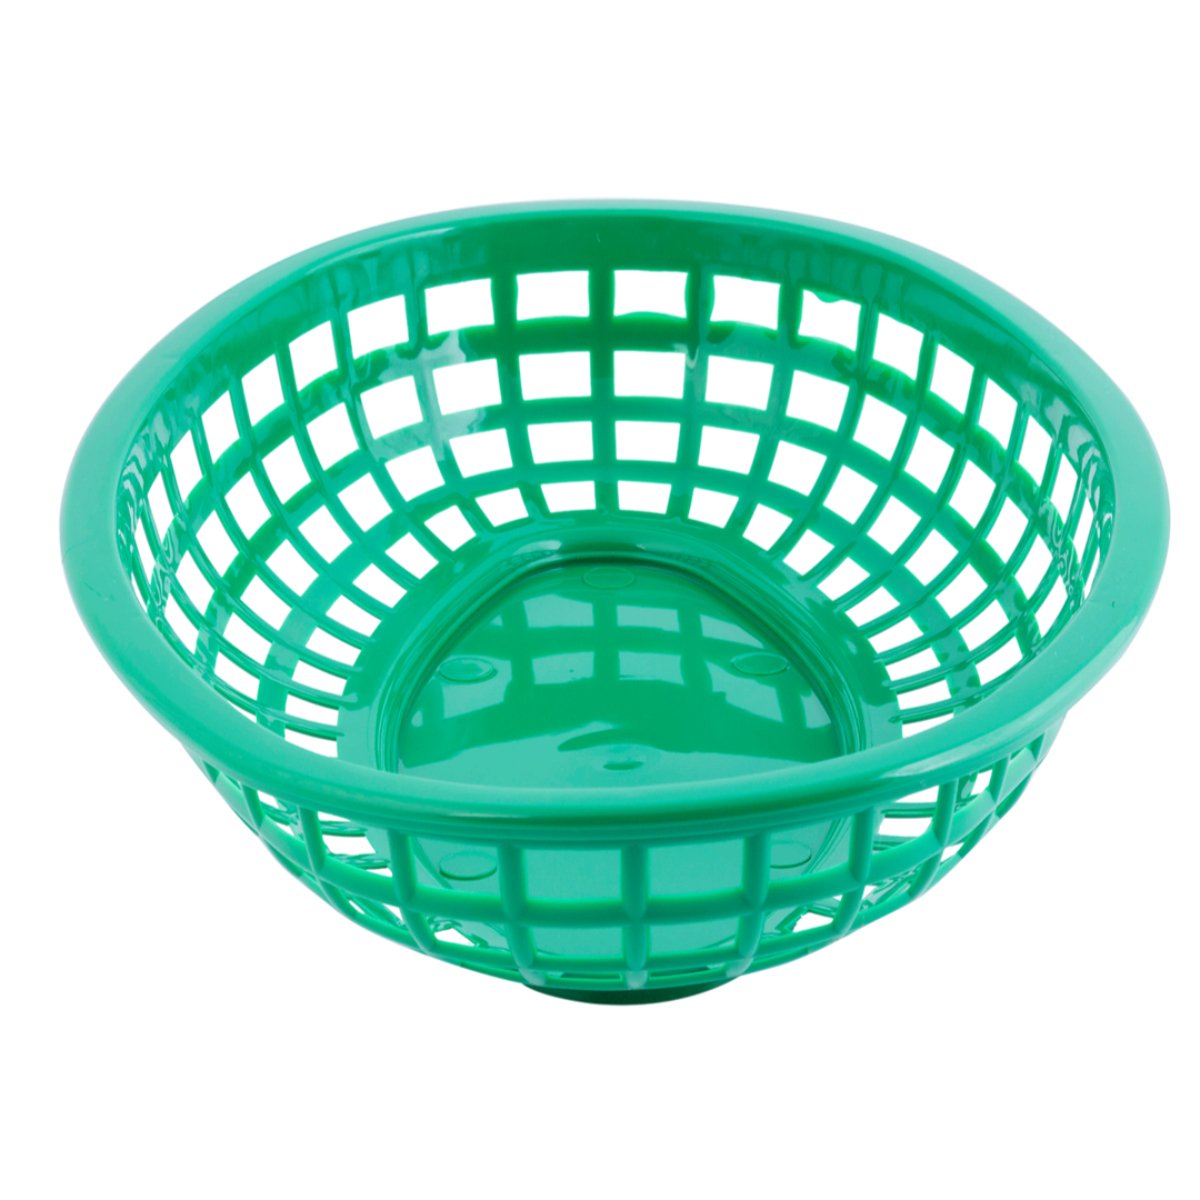 Kitchen Objects - Serving Basket - Kitchenware - DANSKmadeforrooms